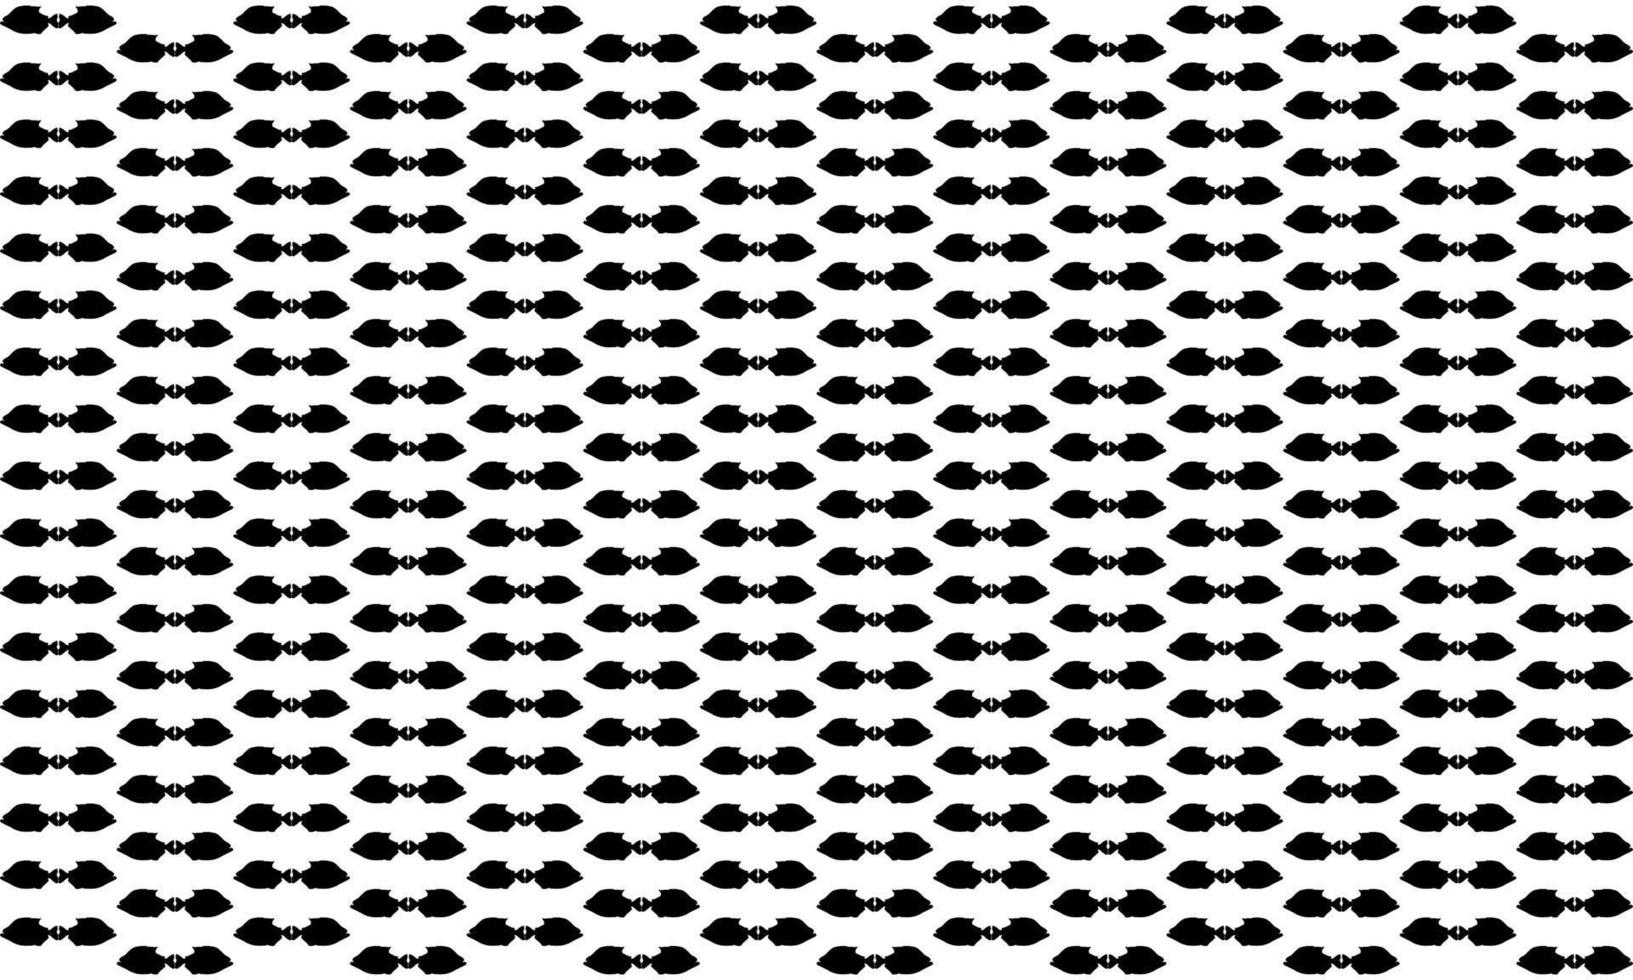 piranha vis motief patroon. decoratie voor mode, interieur, exterieur, tapijt, textiel, kledingstuk, doek, zijde, tegels, plastic, papier, verpakking, behang, kussen, bank en achtergrond. vector